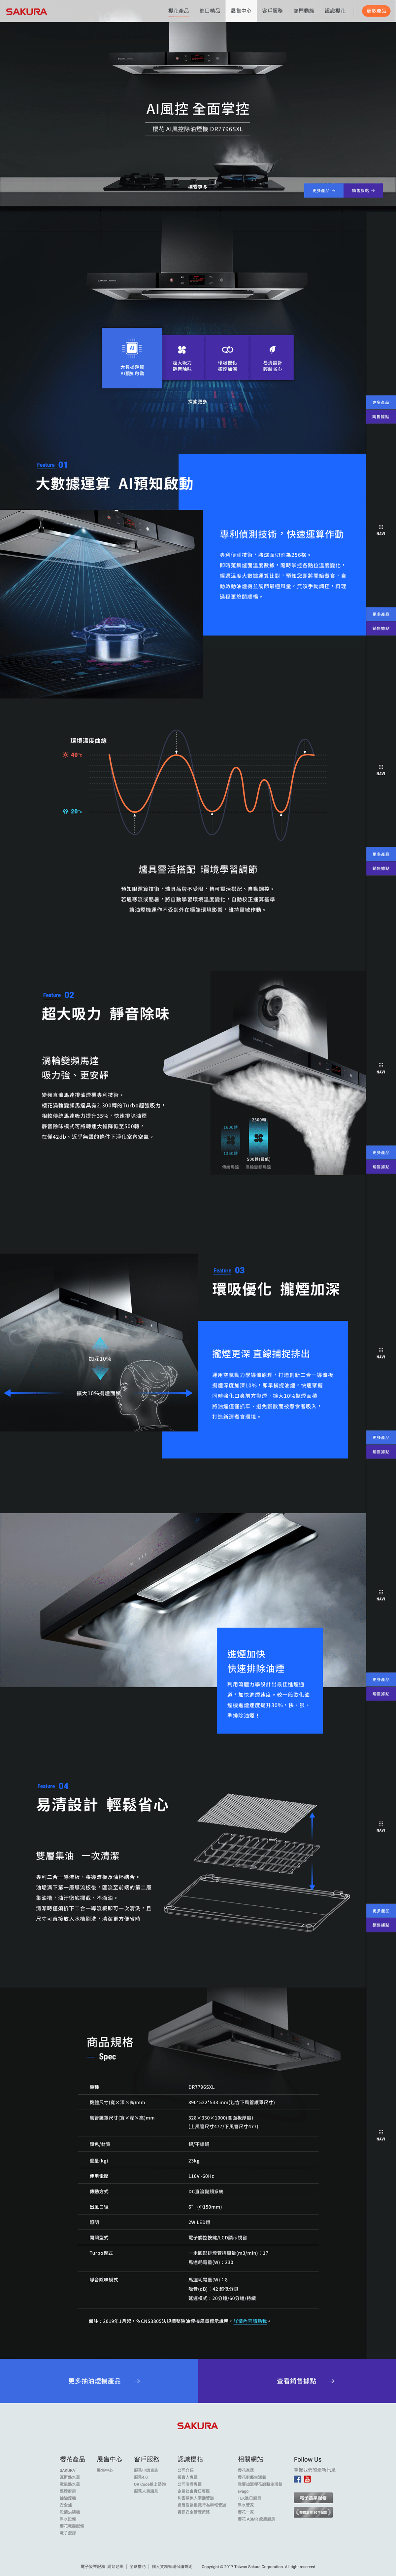 KITCHENWARE microsite sakura Webdesign 品牌官網 網站設計